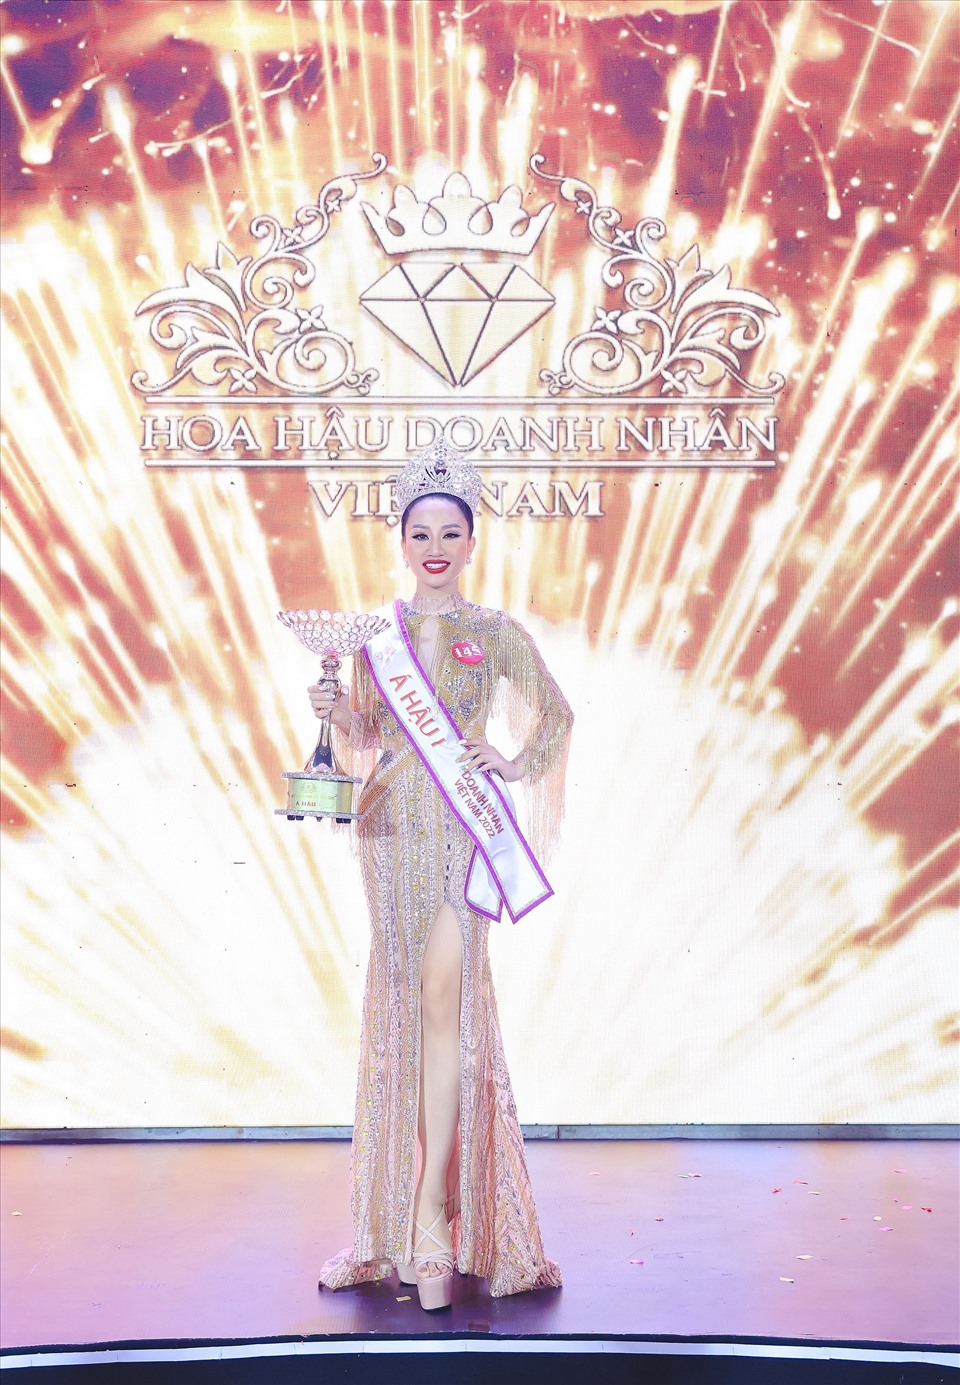 Hoa hậu Doanh Nhân Việt Nam 2022 không chỉ là một cuộc thi nhan sắc mà còn là dịp để quảng bá về văn hoá, du lịch thành phố Đà Nẵng. Đồng thời đây còn là dịp để các quý doanh nhân giao lưu học hỏi, mở rộng kinh doanh hợp tác góp phần thúc đẩy phát triển kinh tế xã hội